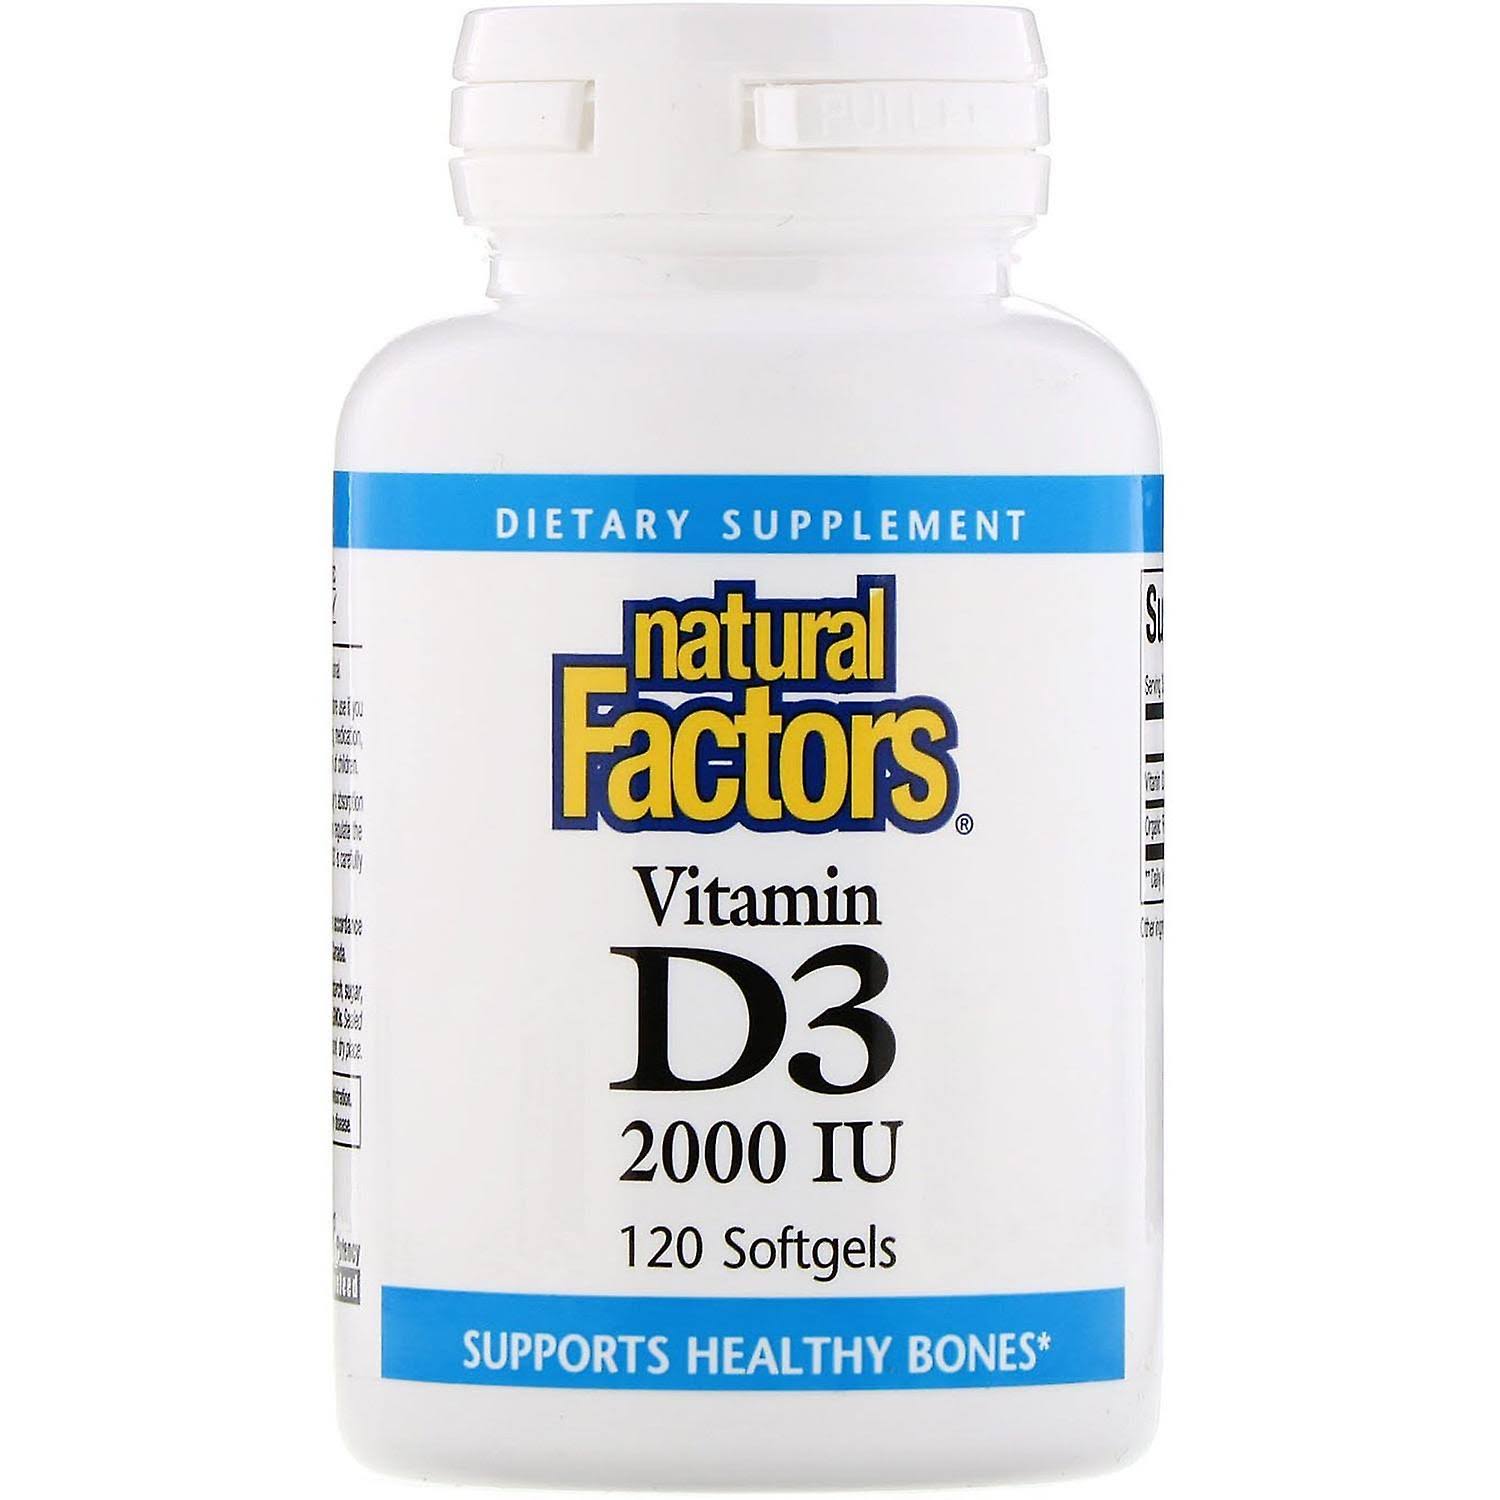 Natural Factors Vitamin D3 2000 IU - 120 Softgels